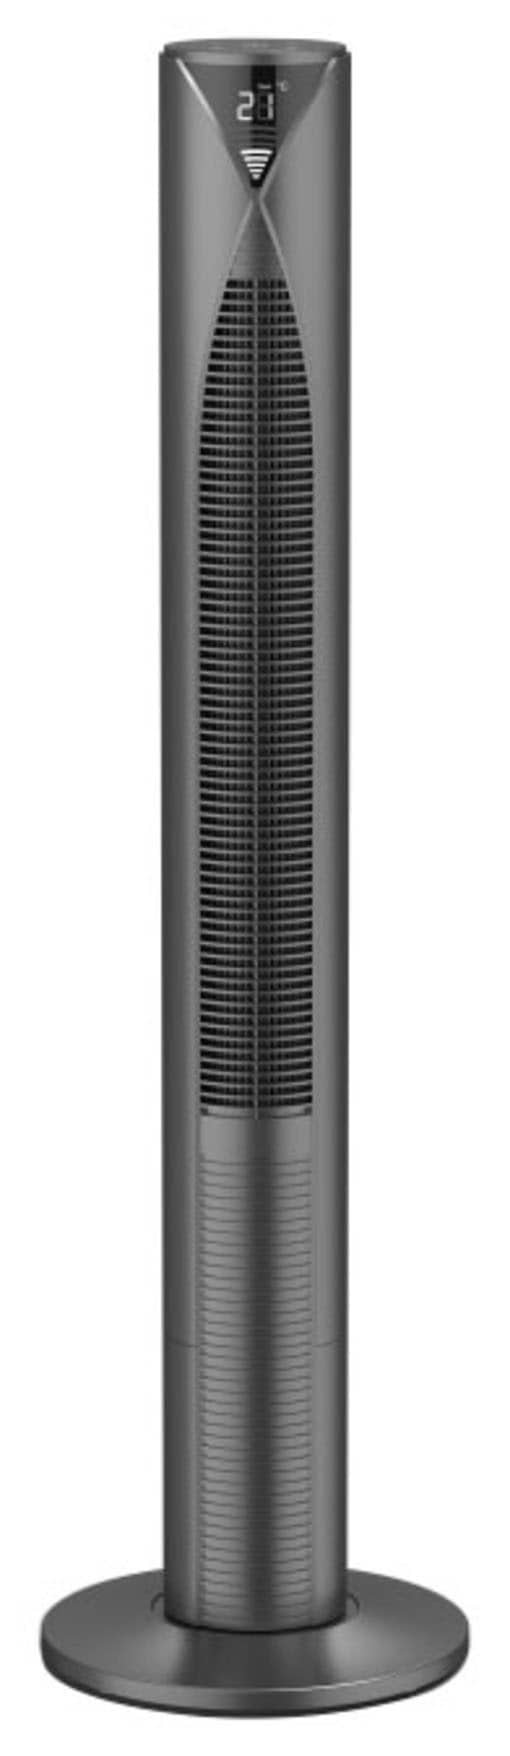 Hama Standventilator "Smarter Standventilator mit Fernbedienung 117cm, Turm, Displayanzeige", 18,6 cm Durchmesser